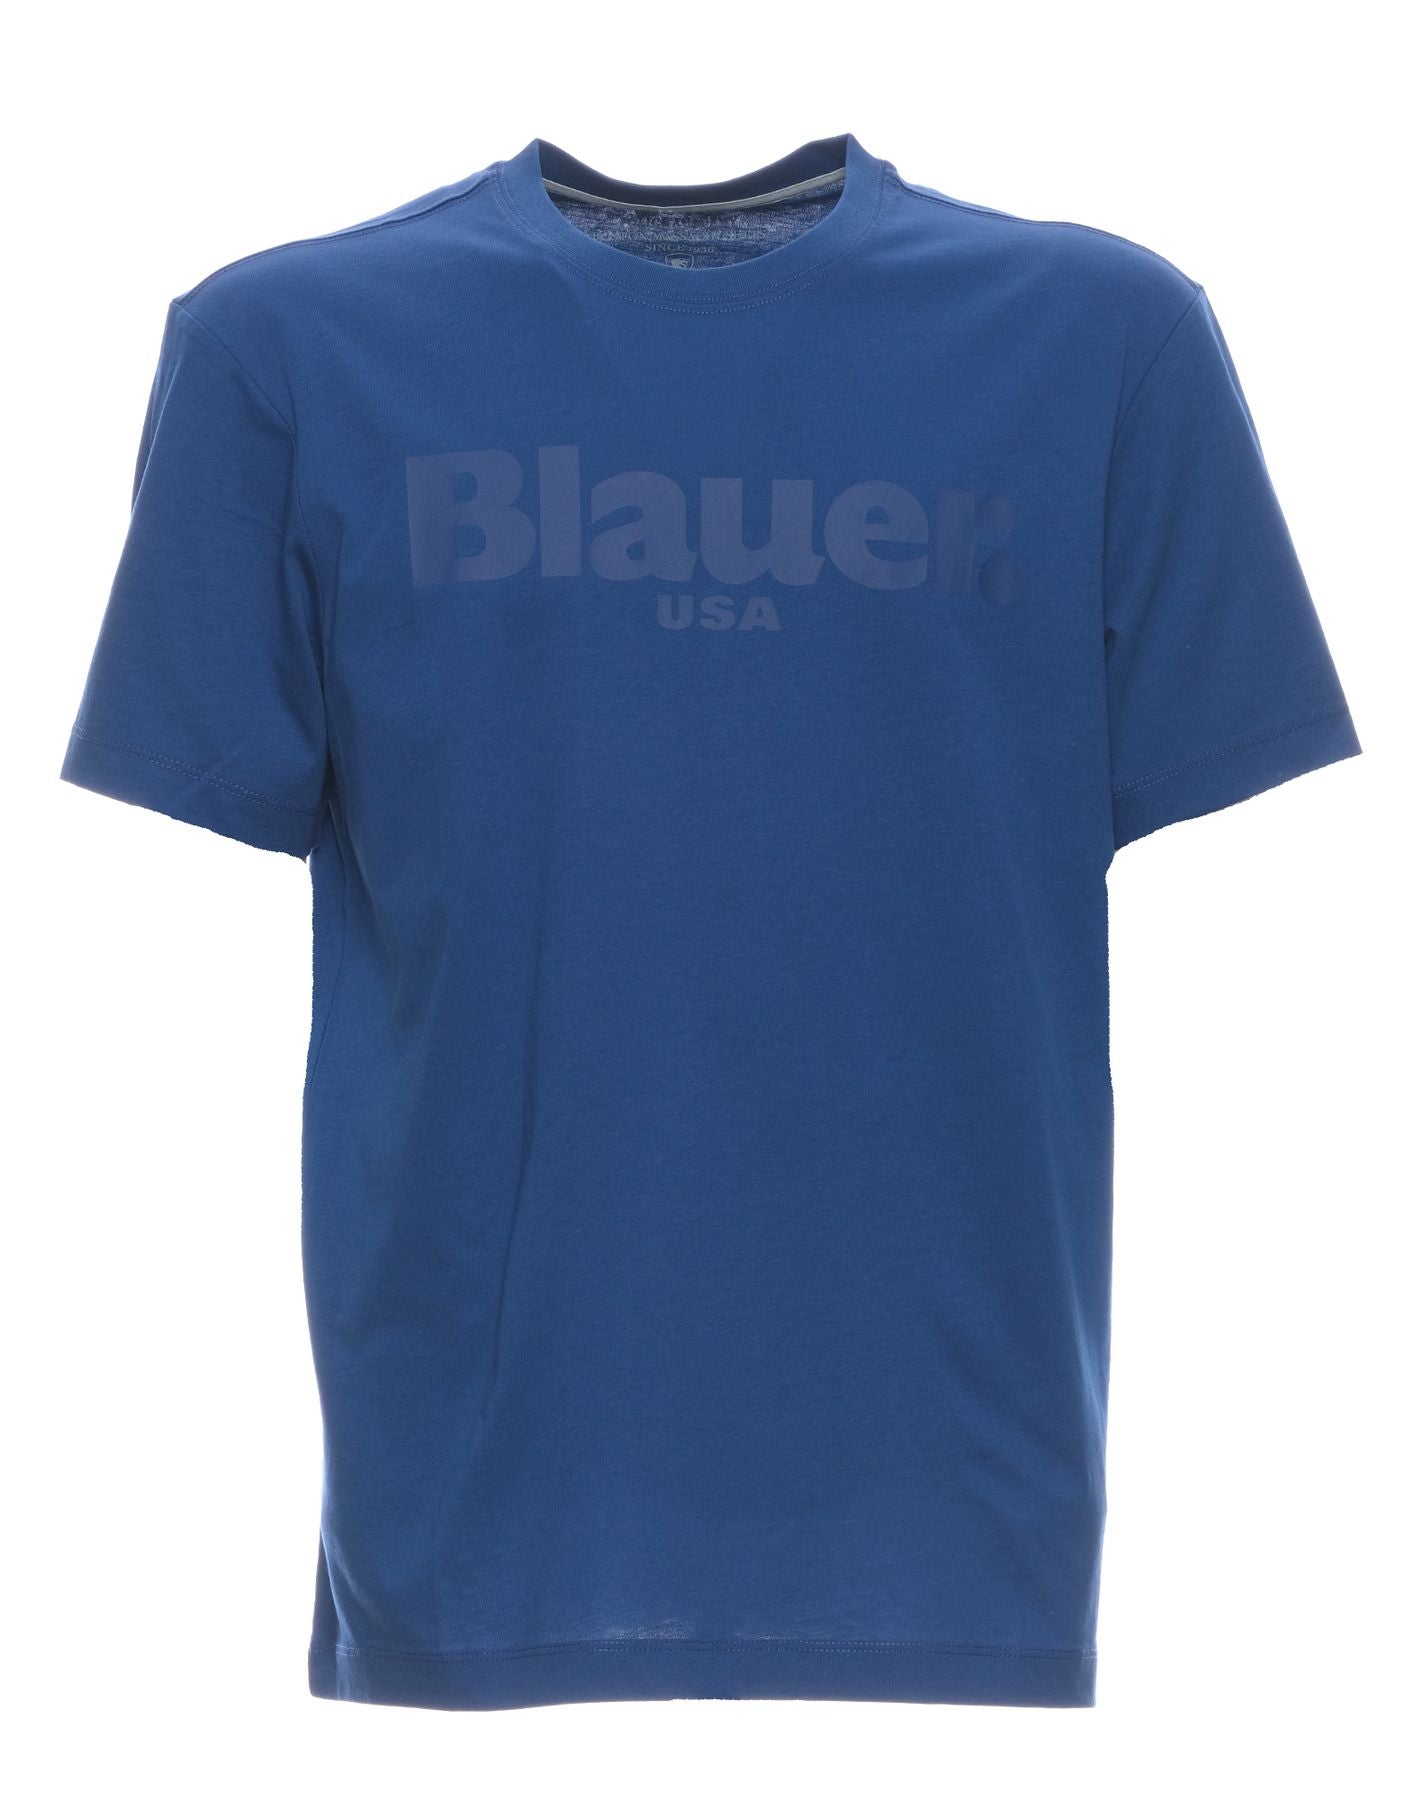 T-Shirt für Mann Bluh02094 004547 772 Blauer